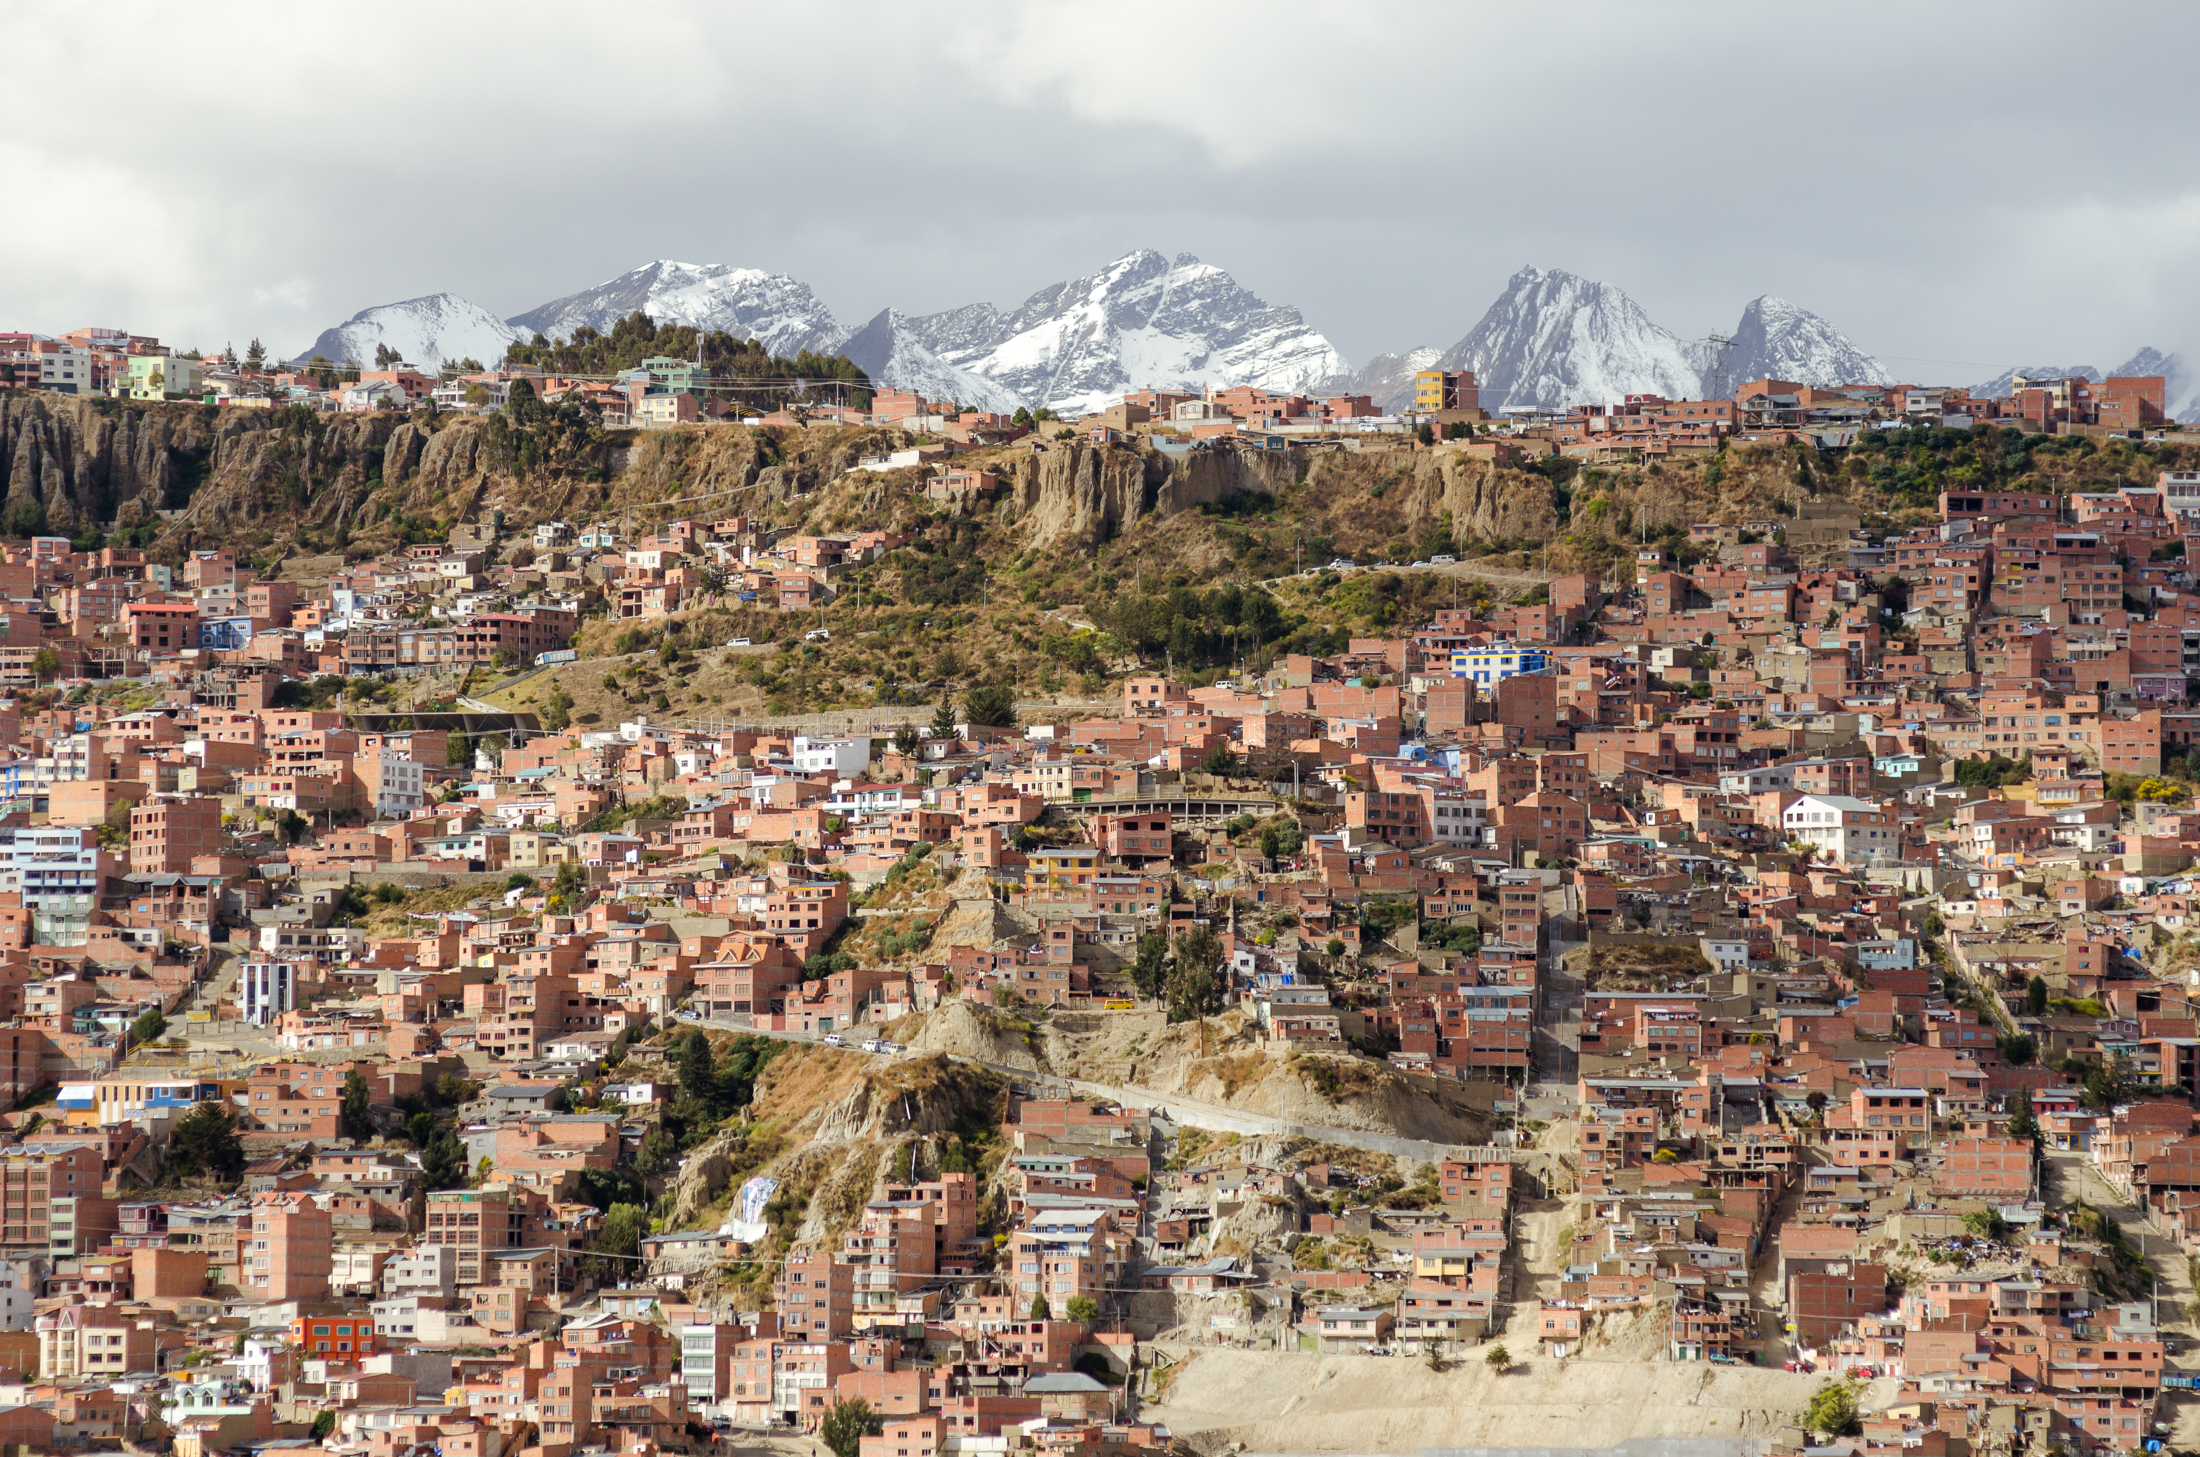  La Paz/Bolivia 